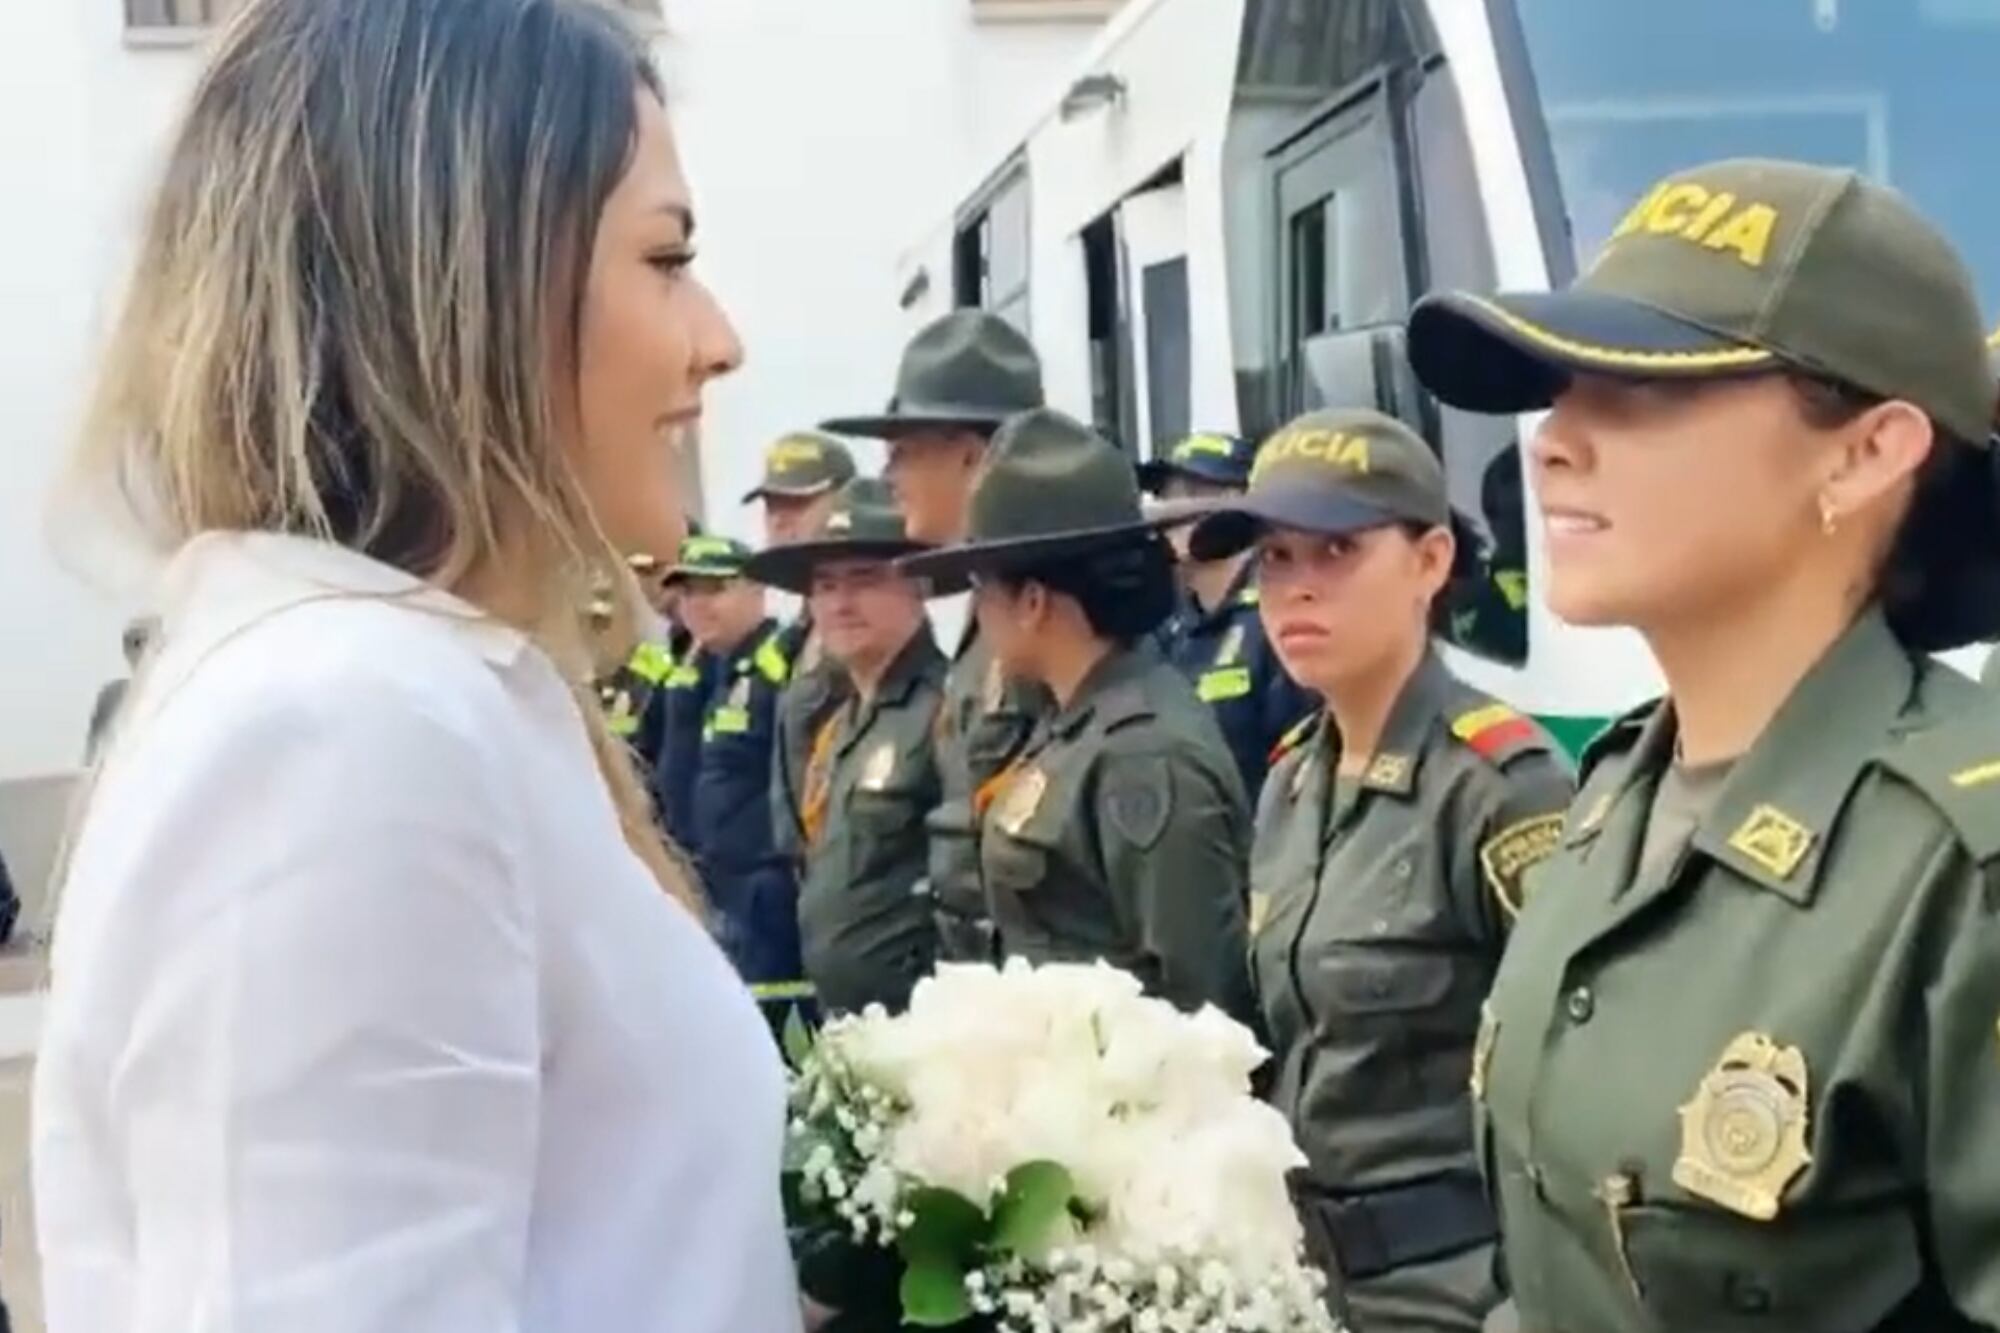 Una mujer policía fue sorprendida por su novia con una particular propuesta de matrimonio